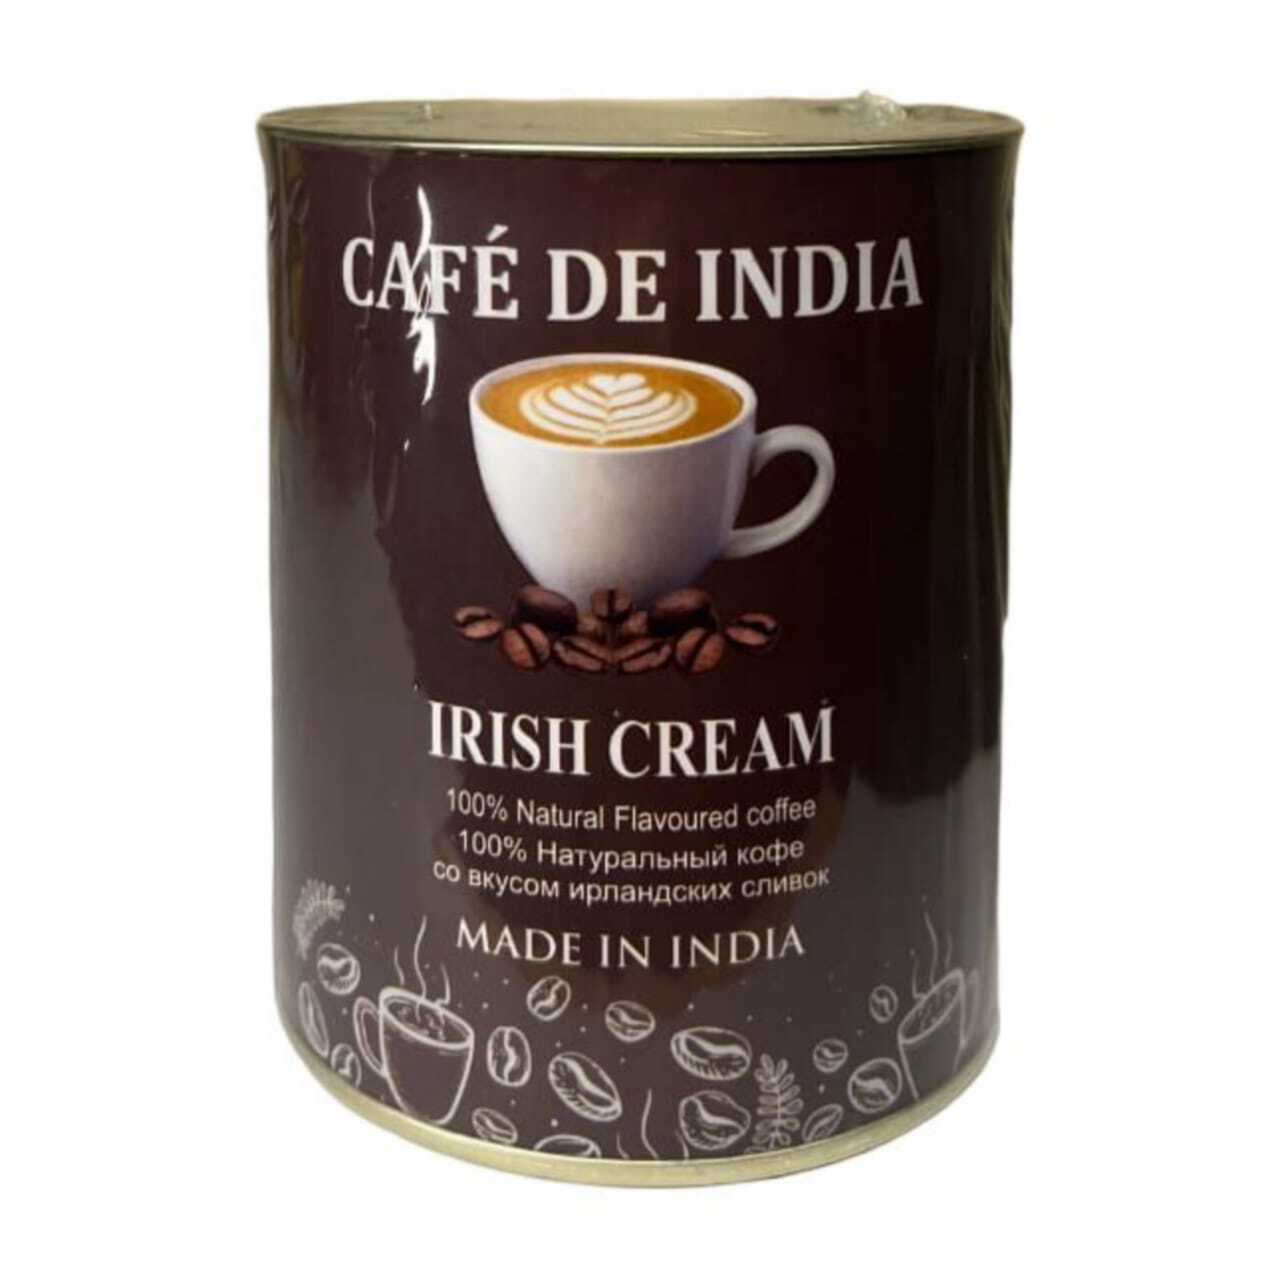 Cafe De India IRISH CREAM, Bharat Bazaar (100% Натуральный растворимый кофе СО ВКУСОМ ИРЛАНДСКИХ СЛИВОК, Бхарат Базаар), 100 г.